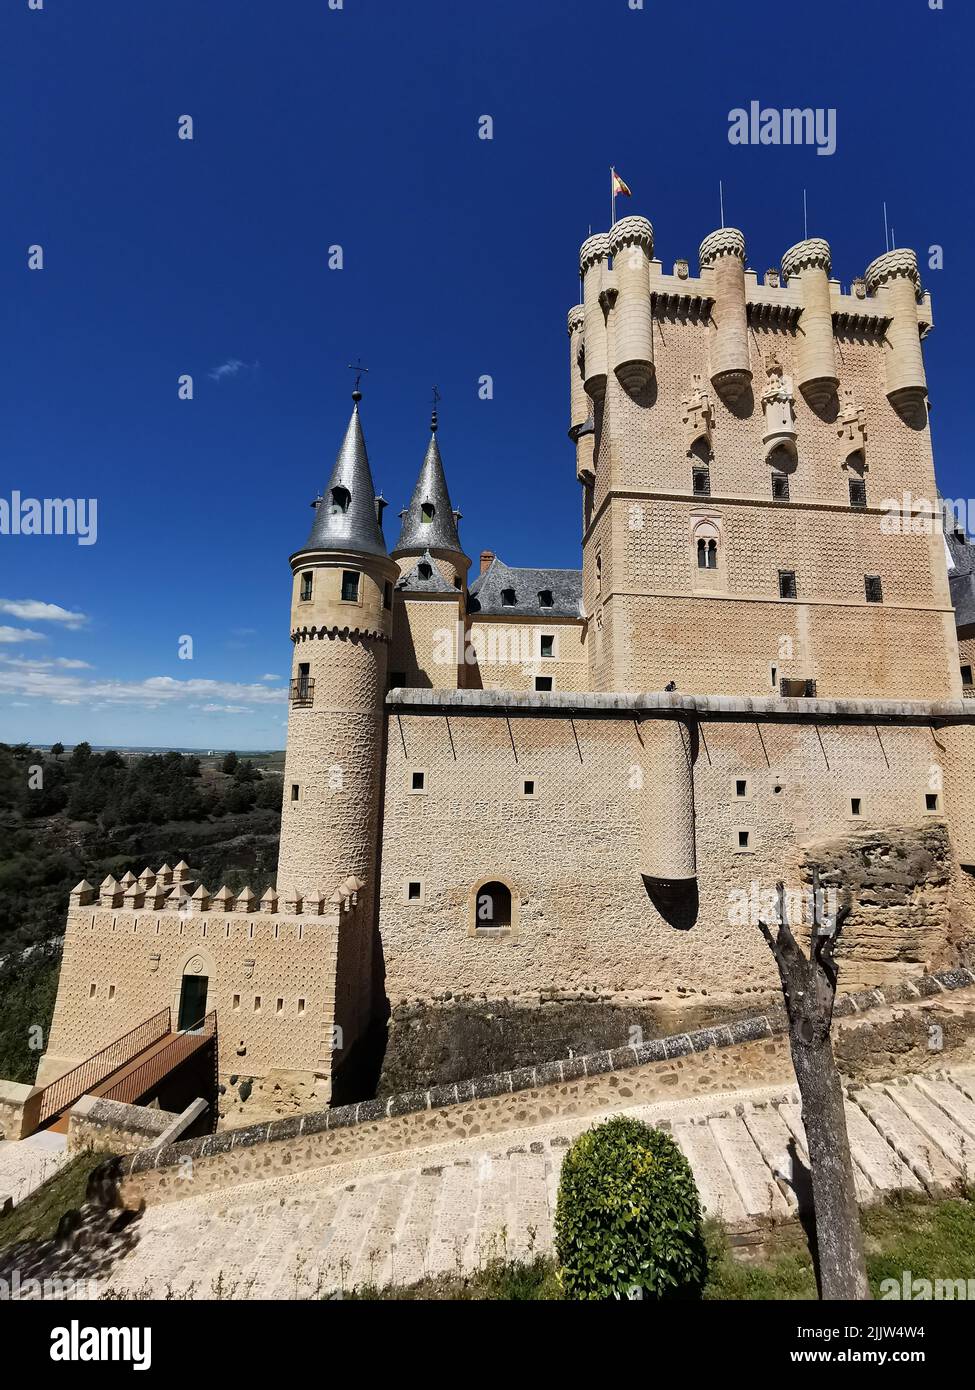 Das berühmte alte mittelalterliche Schloss Segovia an einem sonnigen Tag vor blauem Himmel Stockfoto